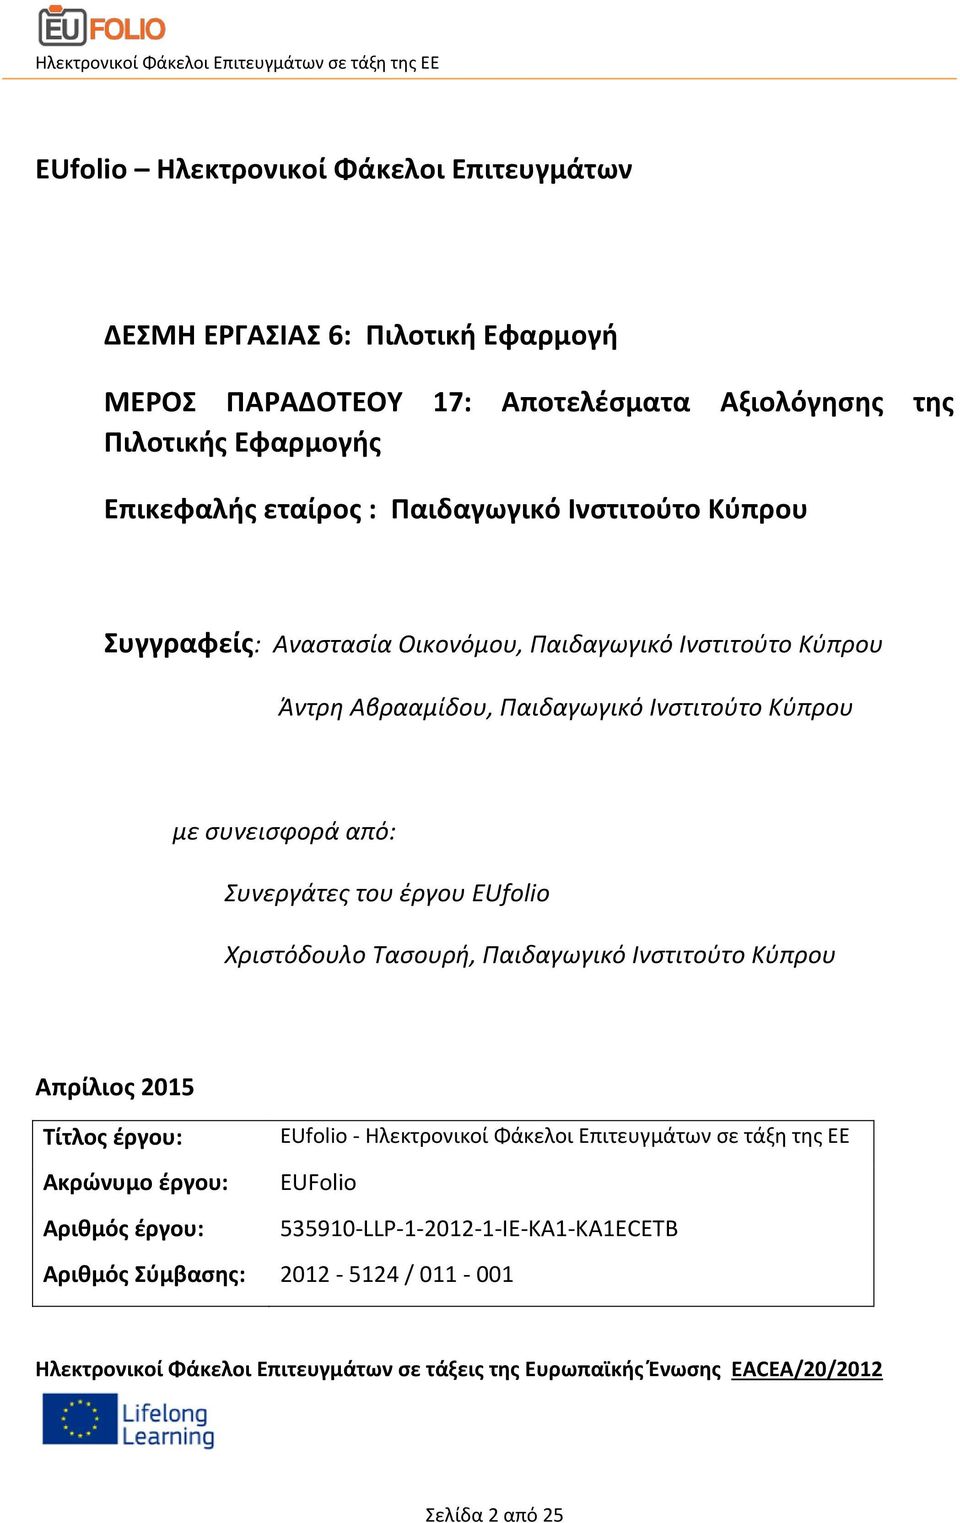 έργου EUfolio Χριστόδουλο Τασουρή, Παιδαγωγικό Ινστιτούτο Κύπρου Απρίλιος 2015 Τίτλος έργου: Ακρώνυμο έργου: Αριθμός έργου: Αριθμός Σύμβασης: EUfolio - Ηλεκτρονικοί Φάκελοι